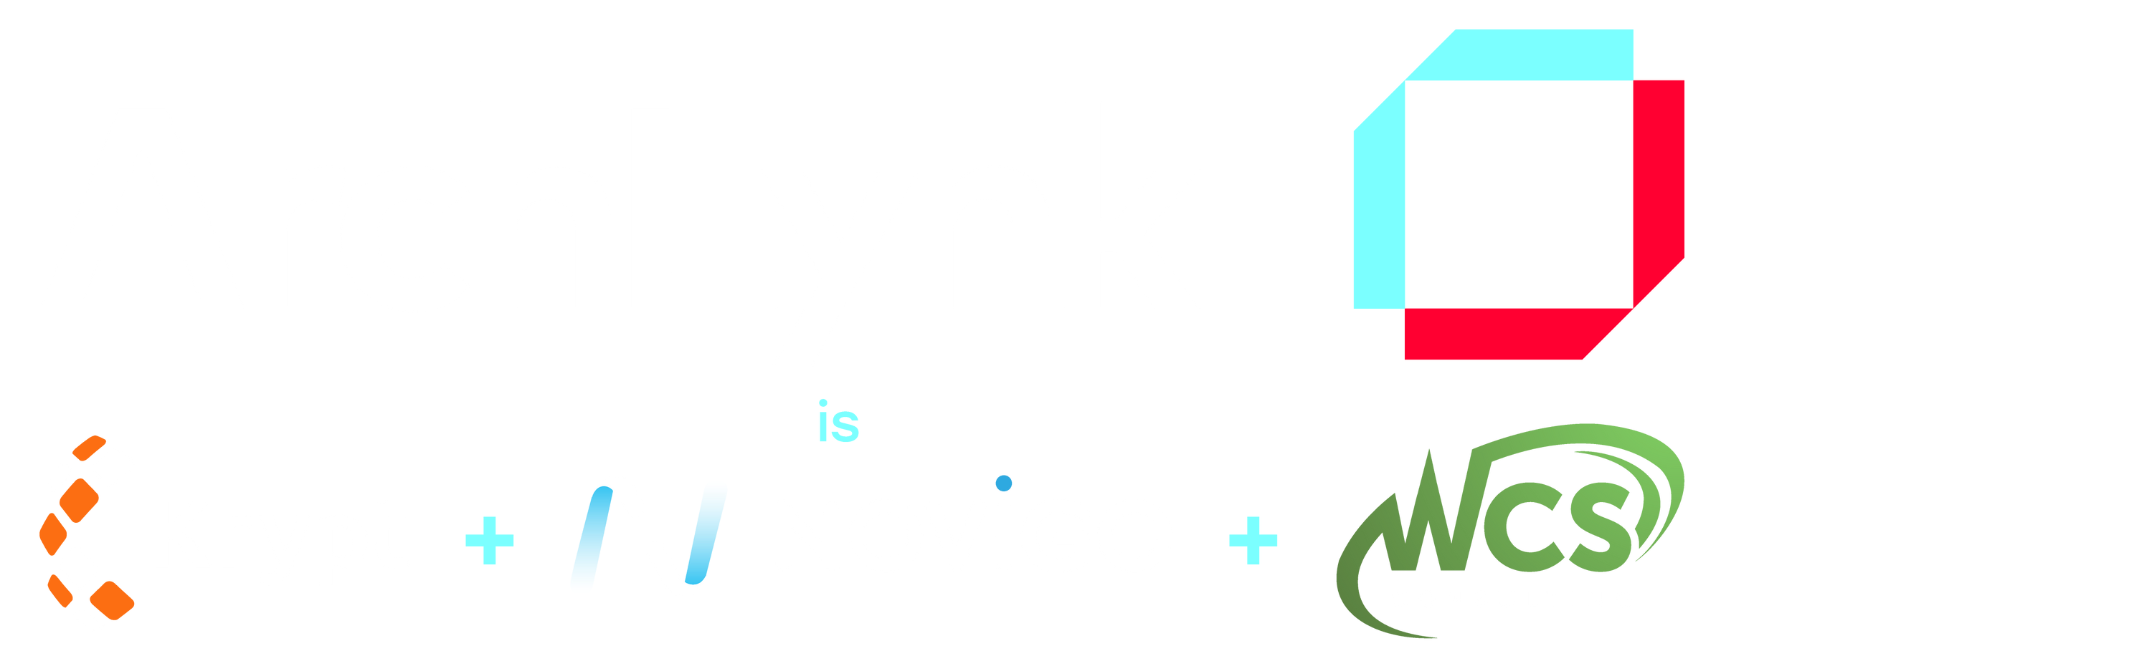 ArchLynk-Website-New-logo